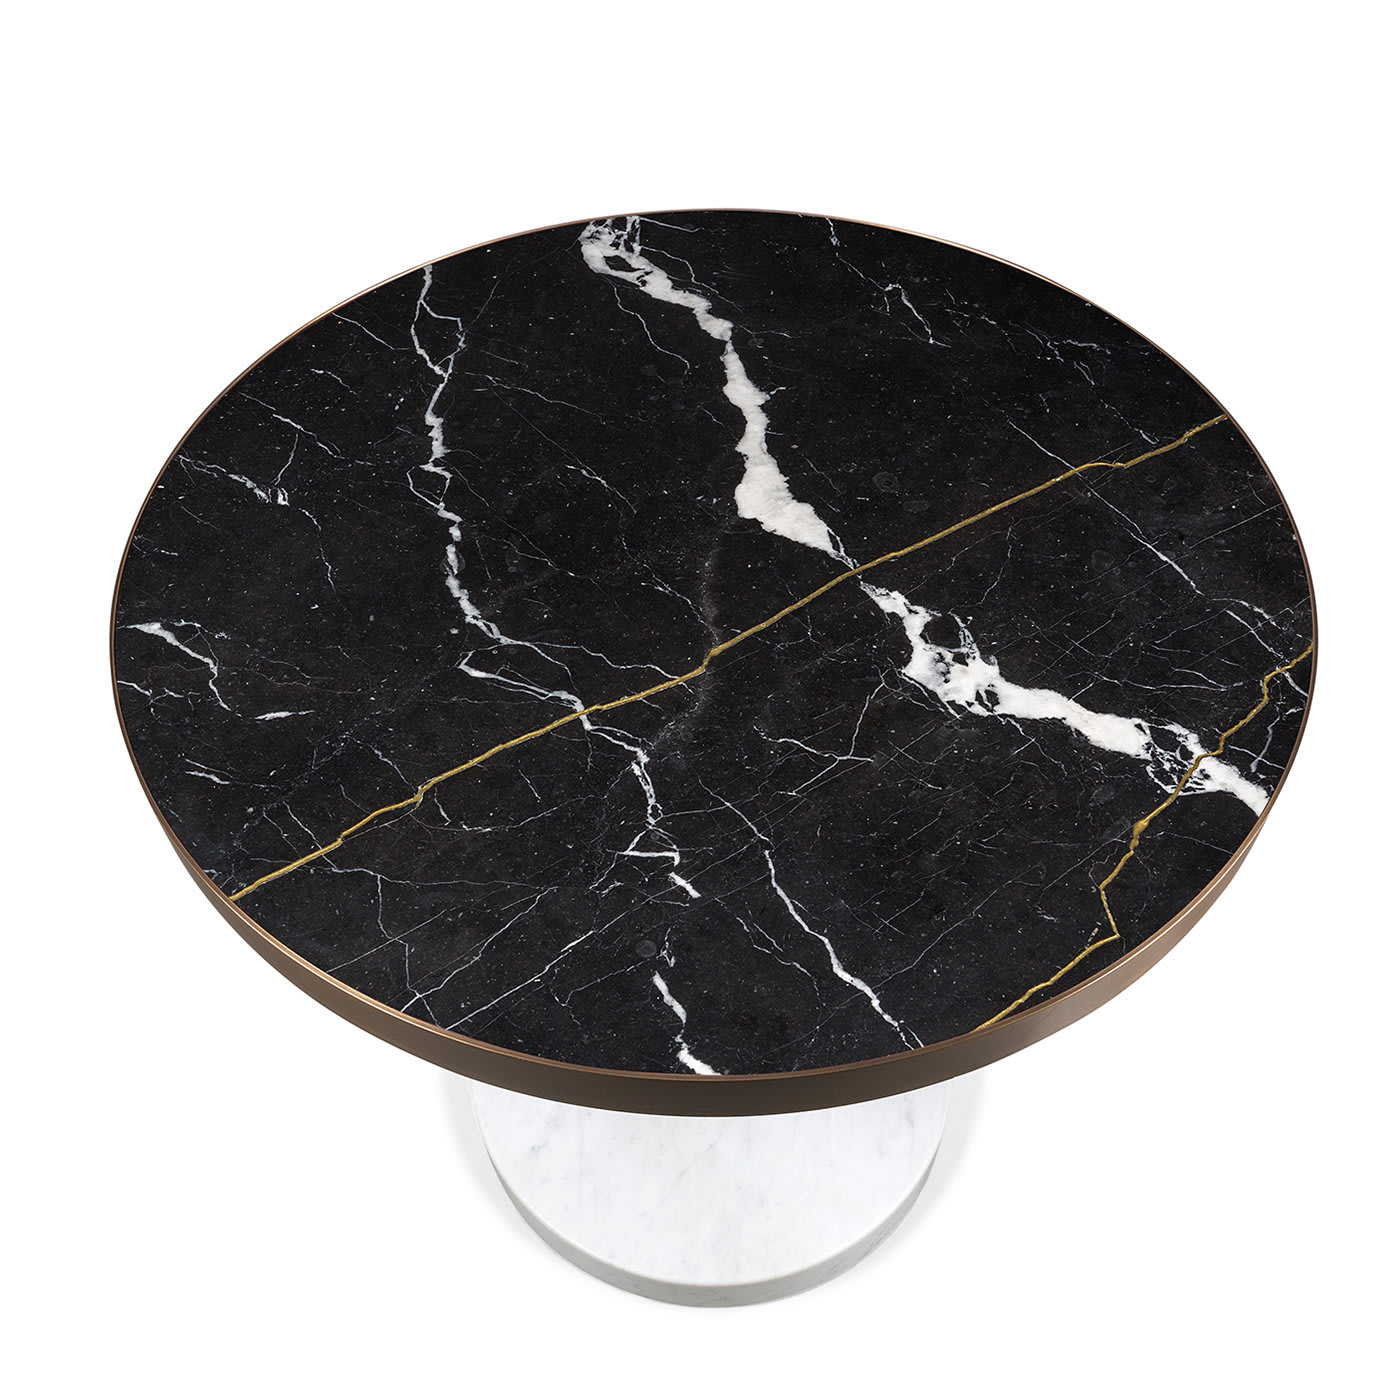 René Bistro Table in Nero Marquinia Marble by Piero Lissoni - Salvatori